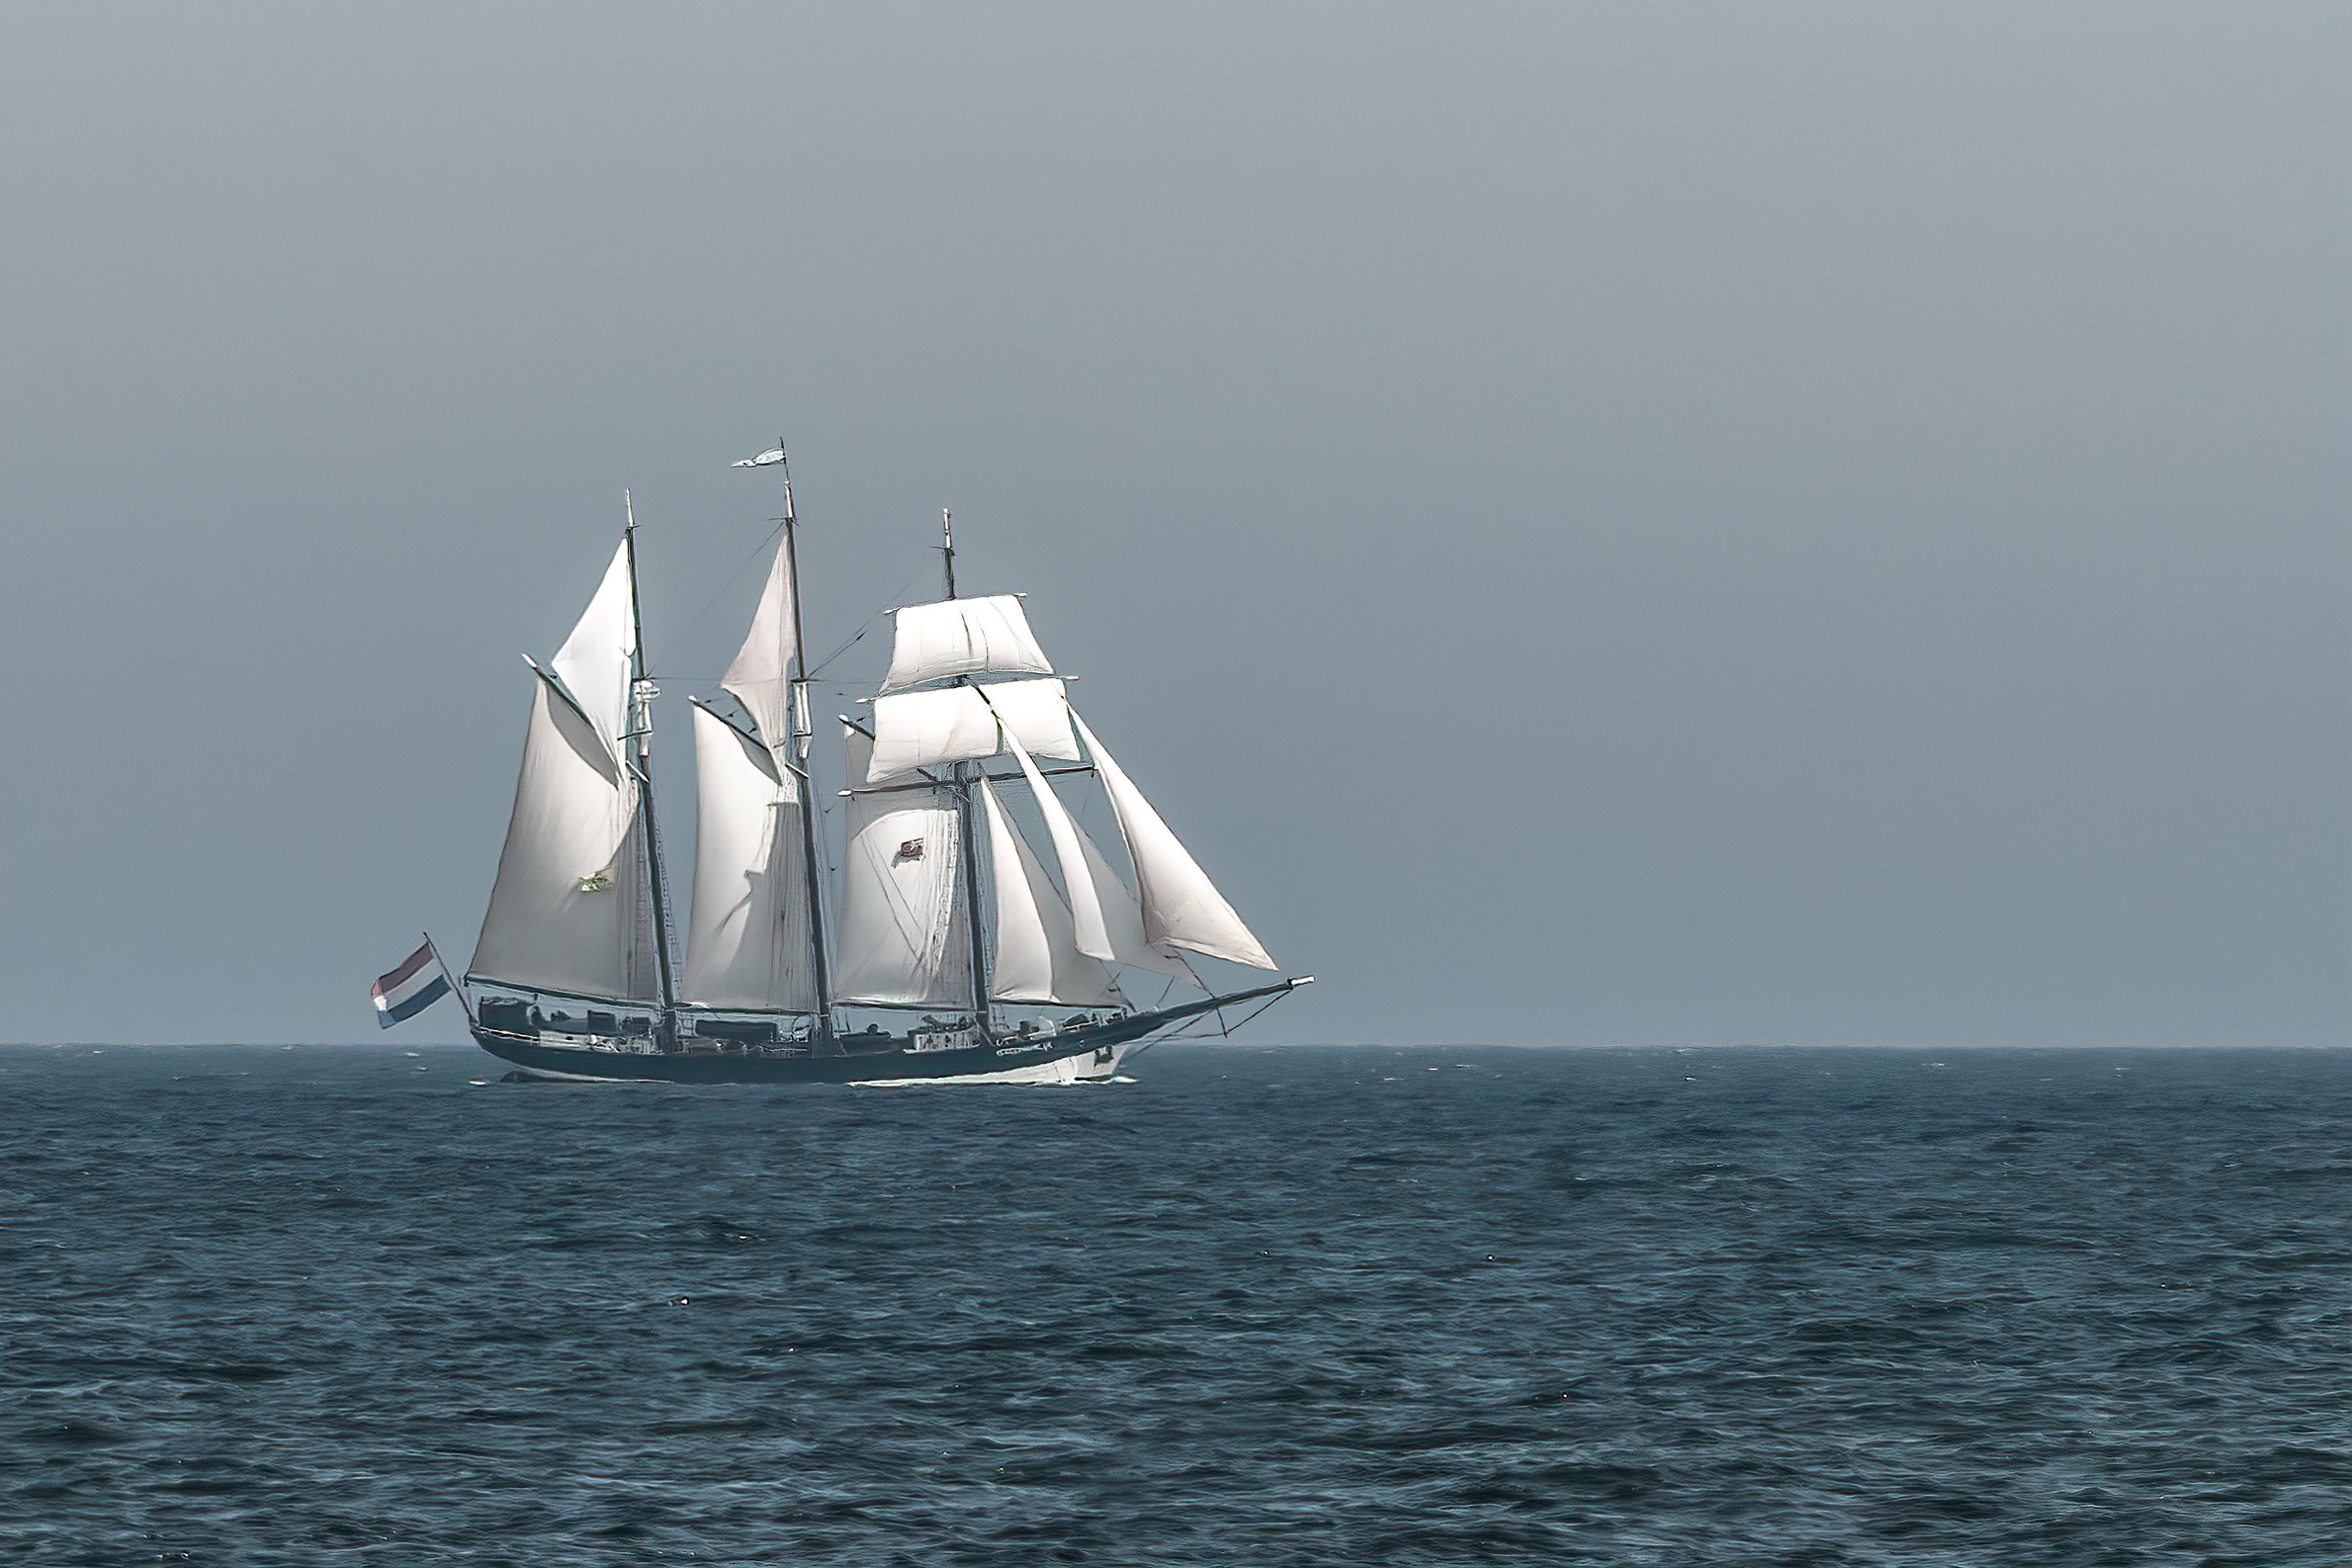 Topsail schooner oosterschelde   north sea  kapzr7